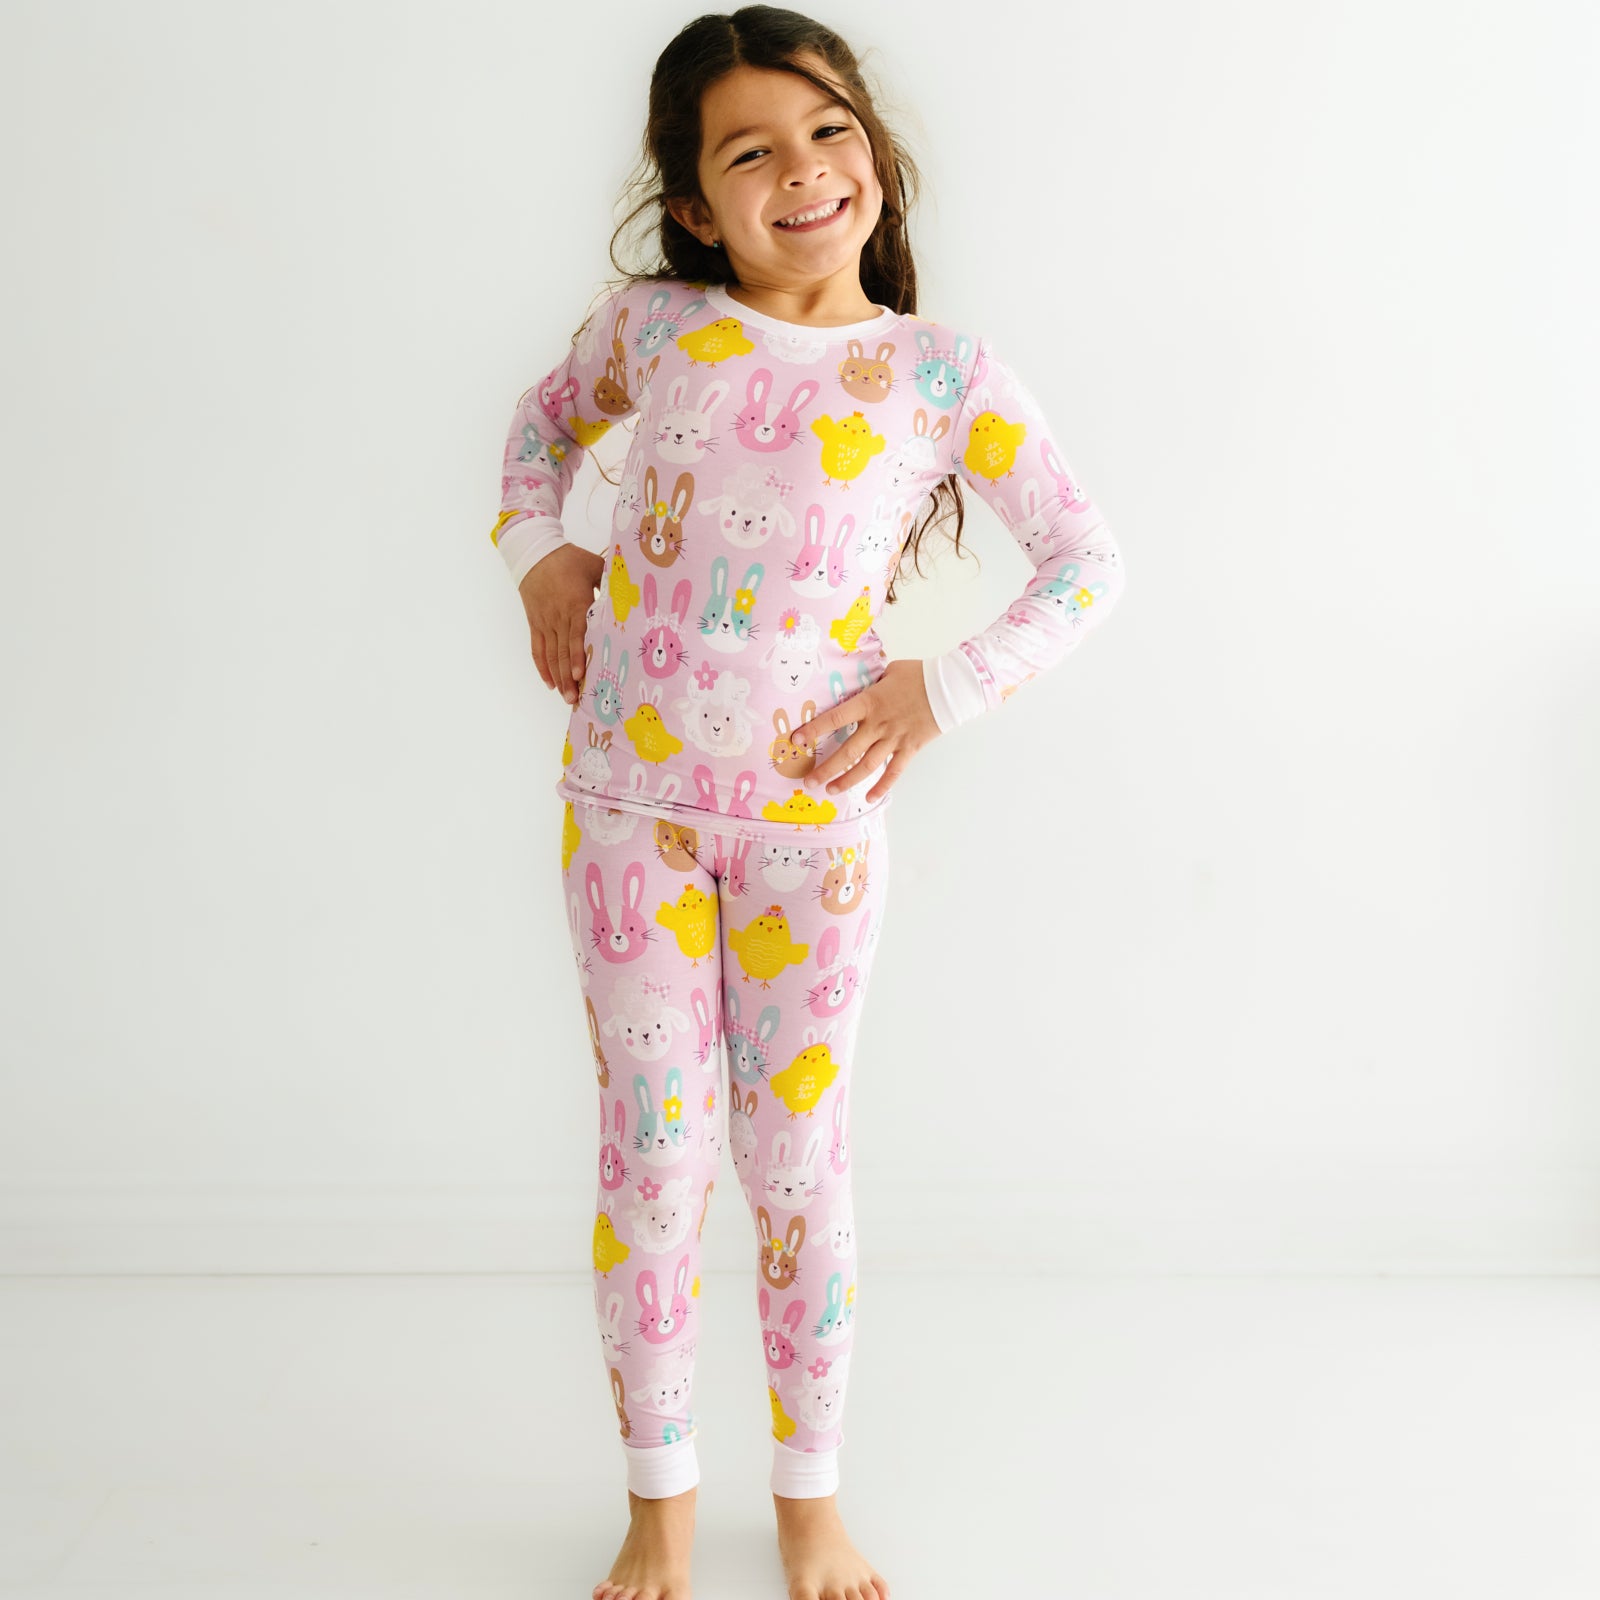 Child posing wearing Pink Pastel Parade two piece pajama set